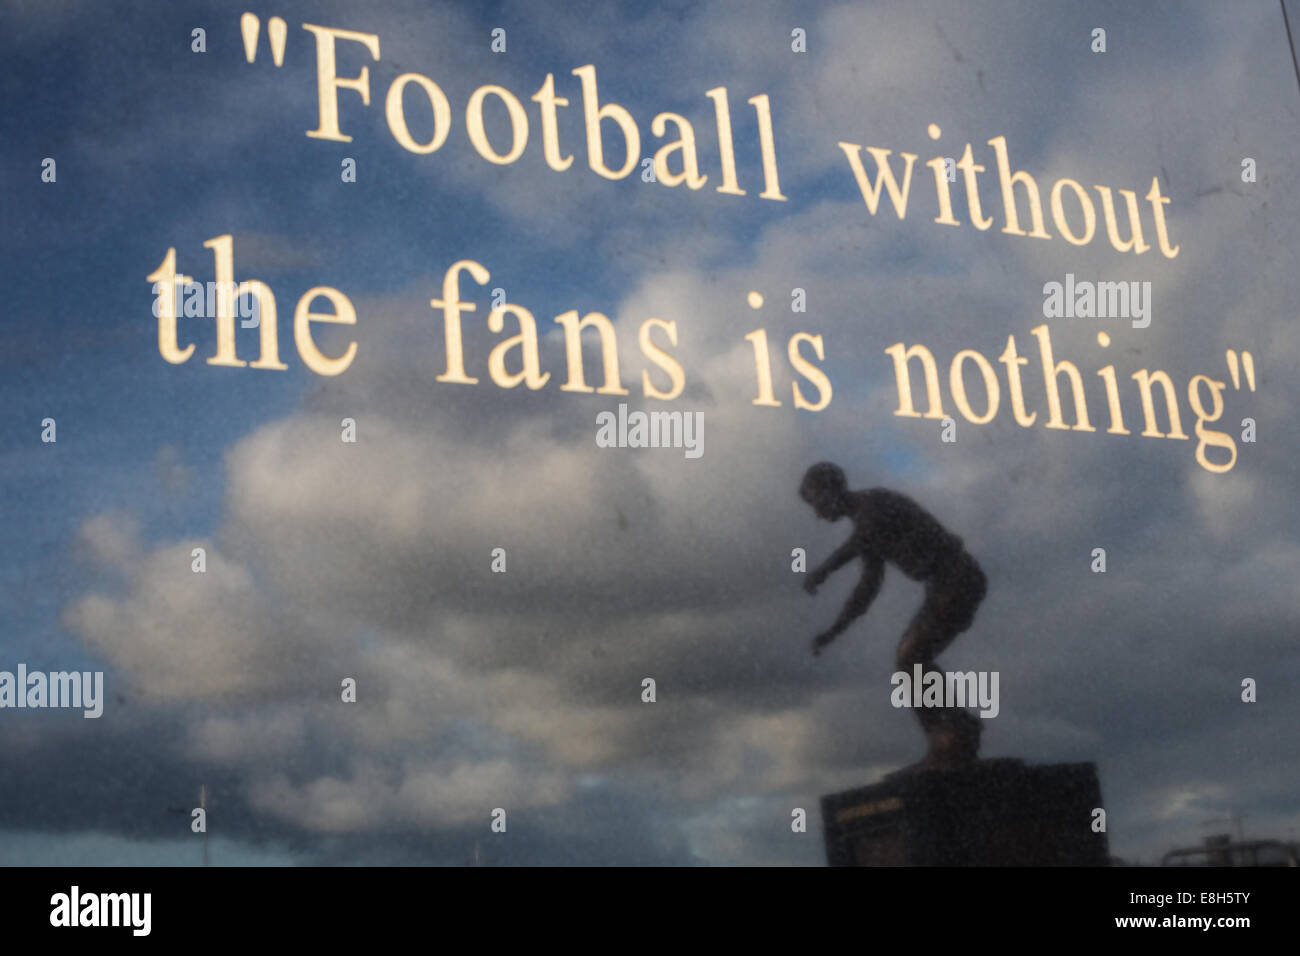 Zitat aus der ehemaligen Manager Jock Stein auf eine Statue Sockel, mit Reflexion der Statue des ehemaligen Spieler und Legende Jimmy Johnstone Stockfoto